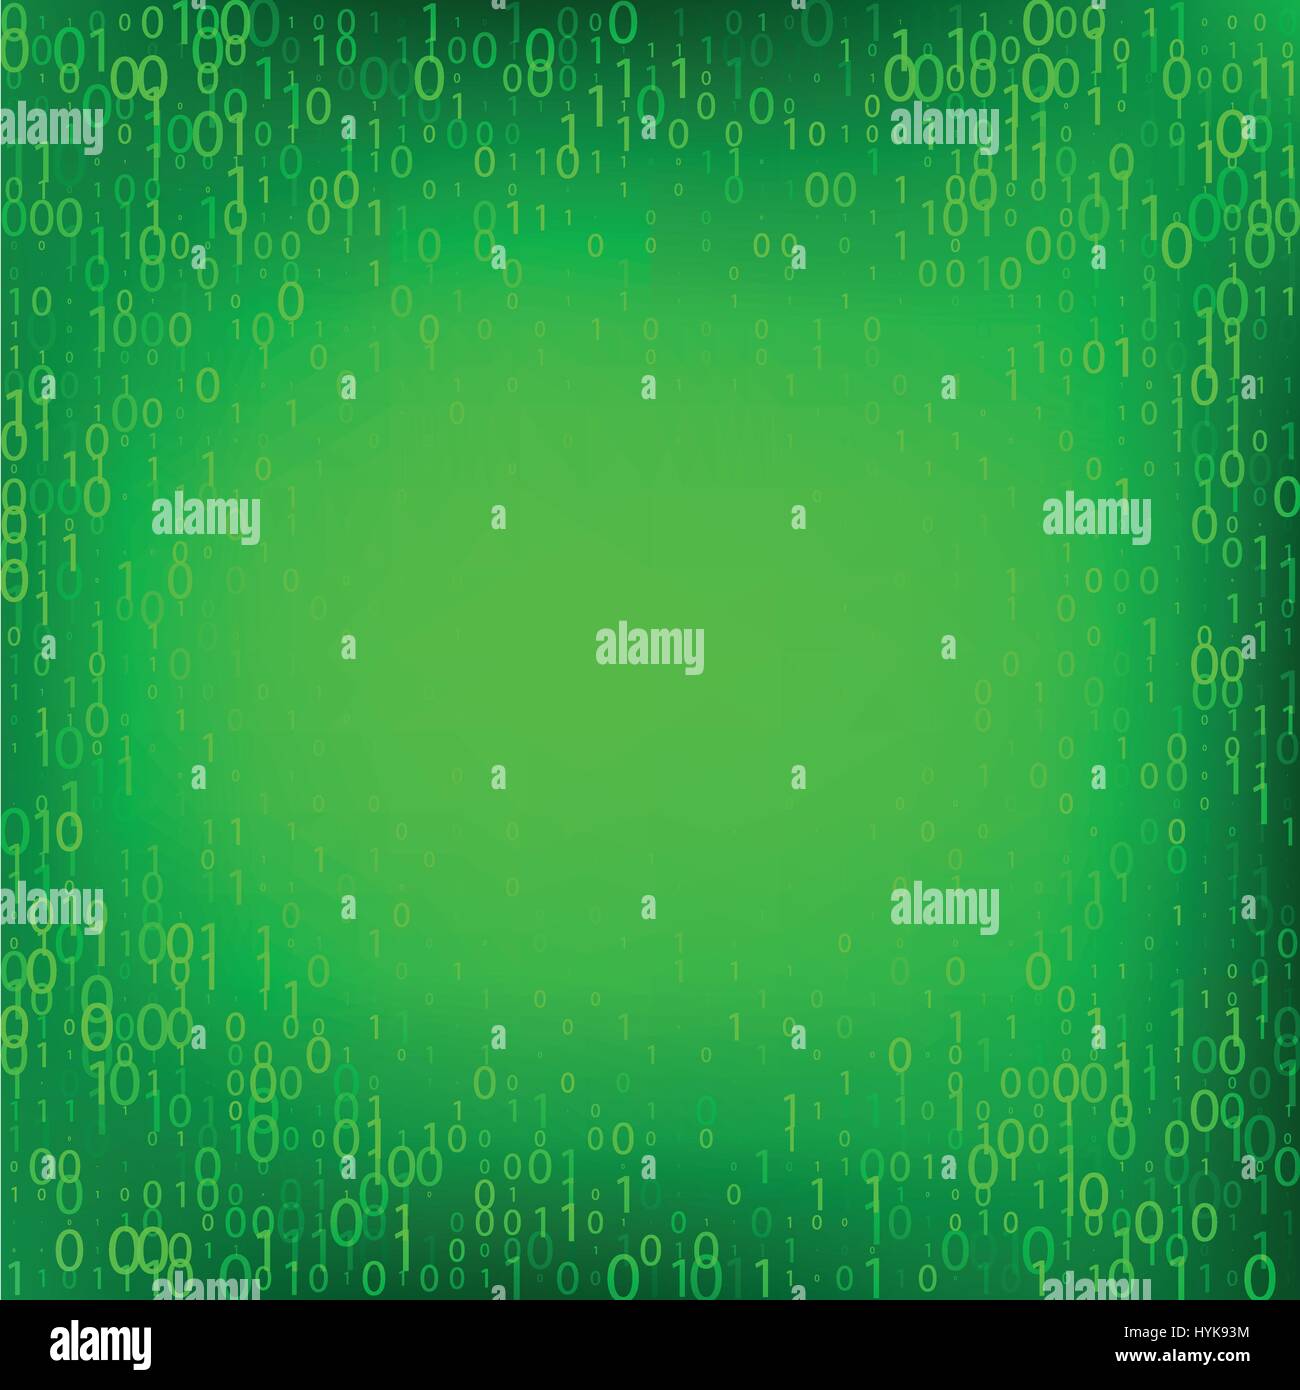 Isolierte abstrakte Grünfärbung Binärcode Herbst Hintergrund, Programmierung Element-Hintergrund-Vektor-illustration Stock Vektor